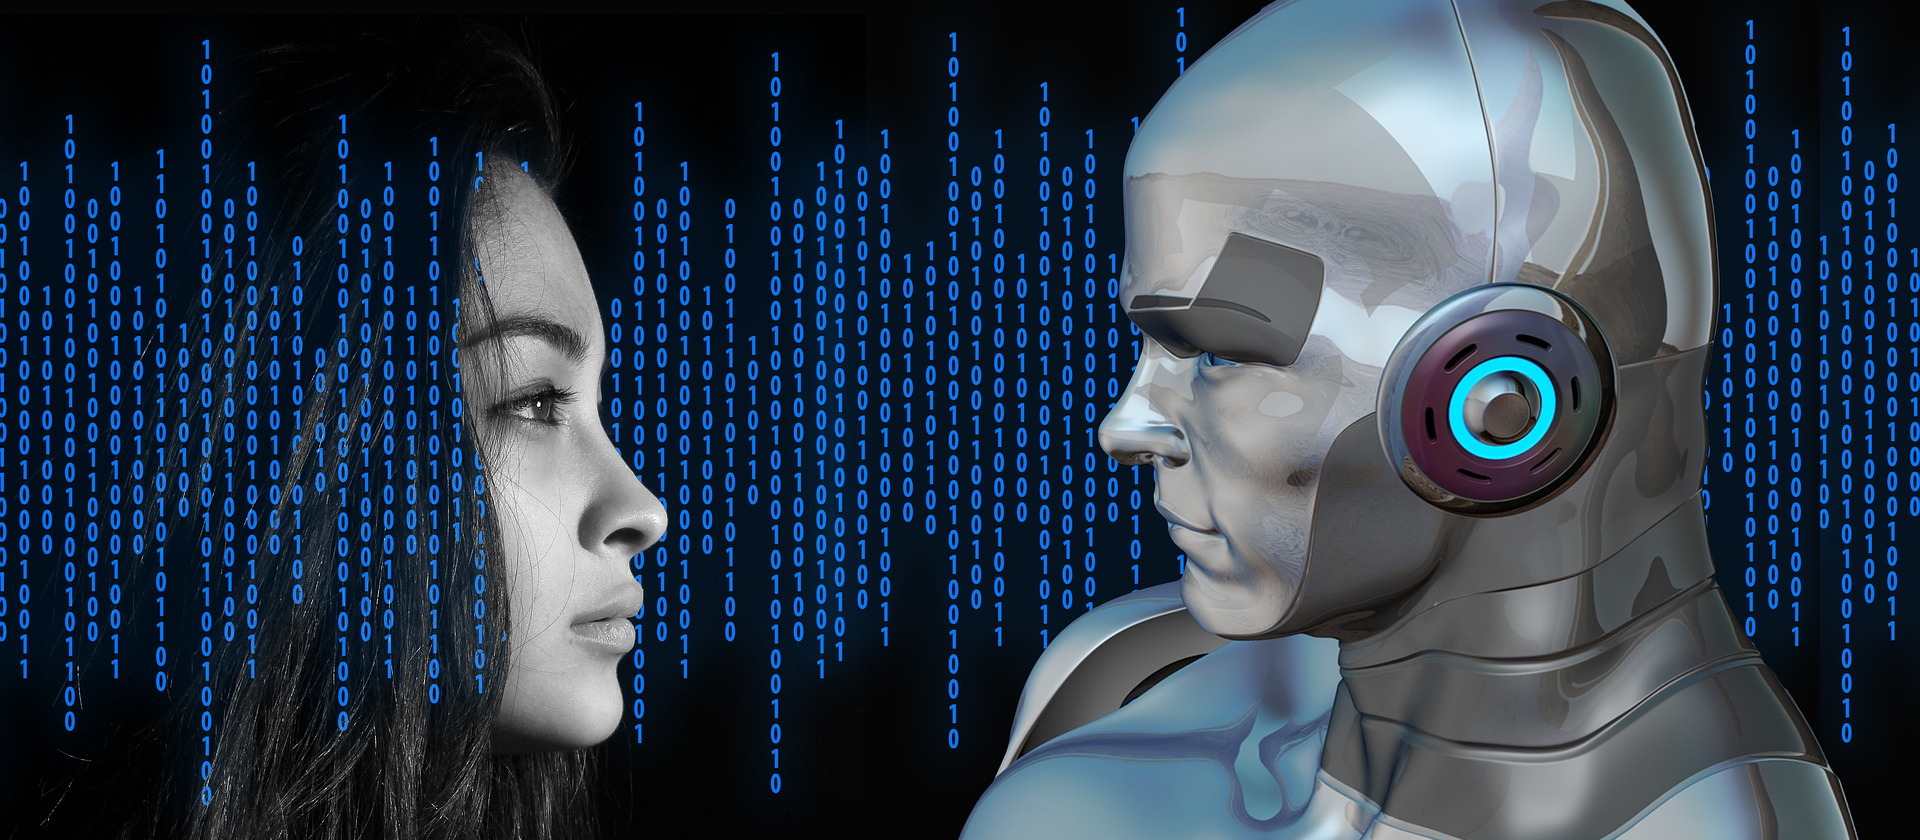 O futuro da humanidade está na ética dos algoritmos de inteligência artificial